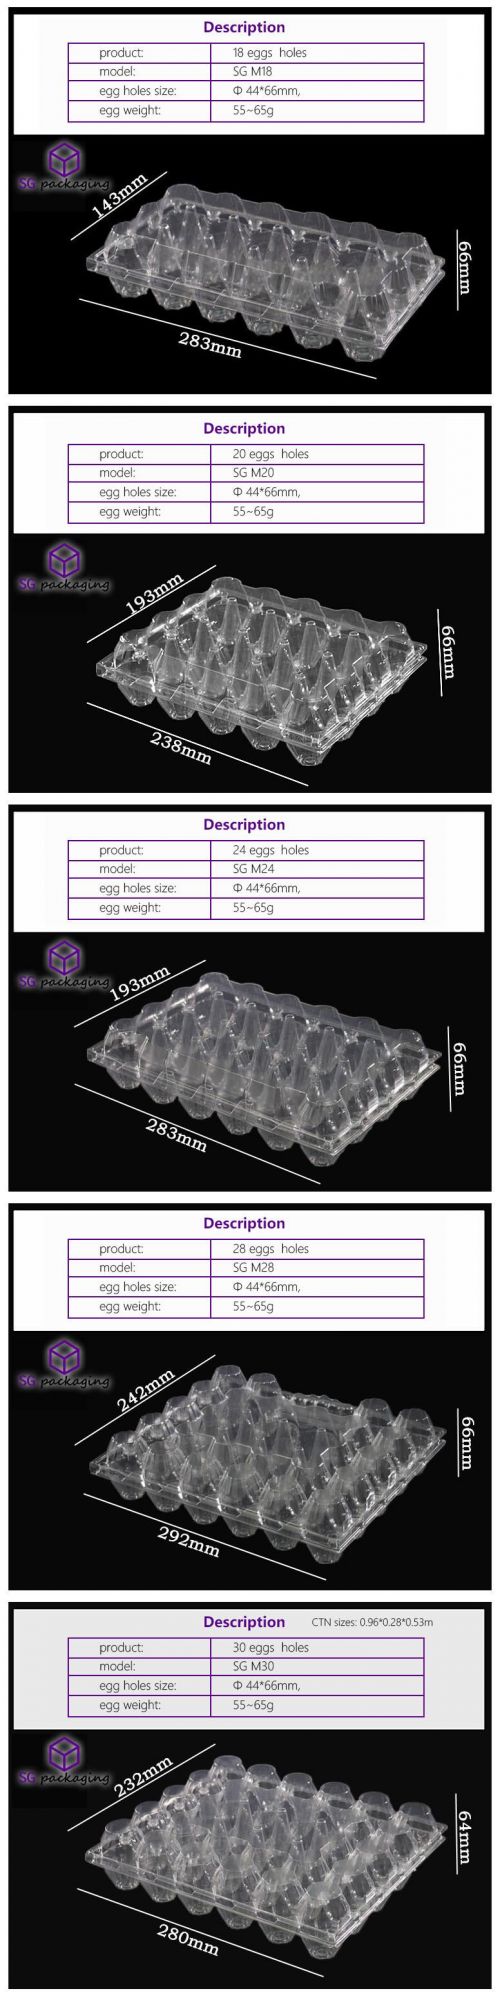 2/4/6/8/9/10/12/15/18/20/24/28/30 Wholesale Disposable Pet Transparent Plastic Egg Crate / Box with 10 Cells